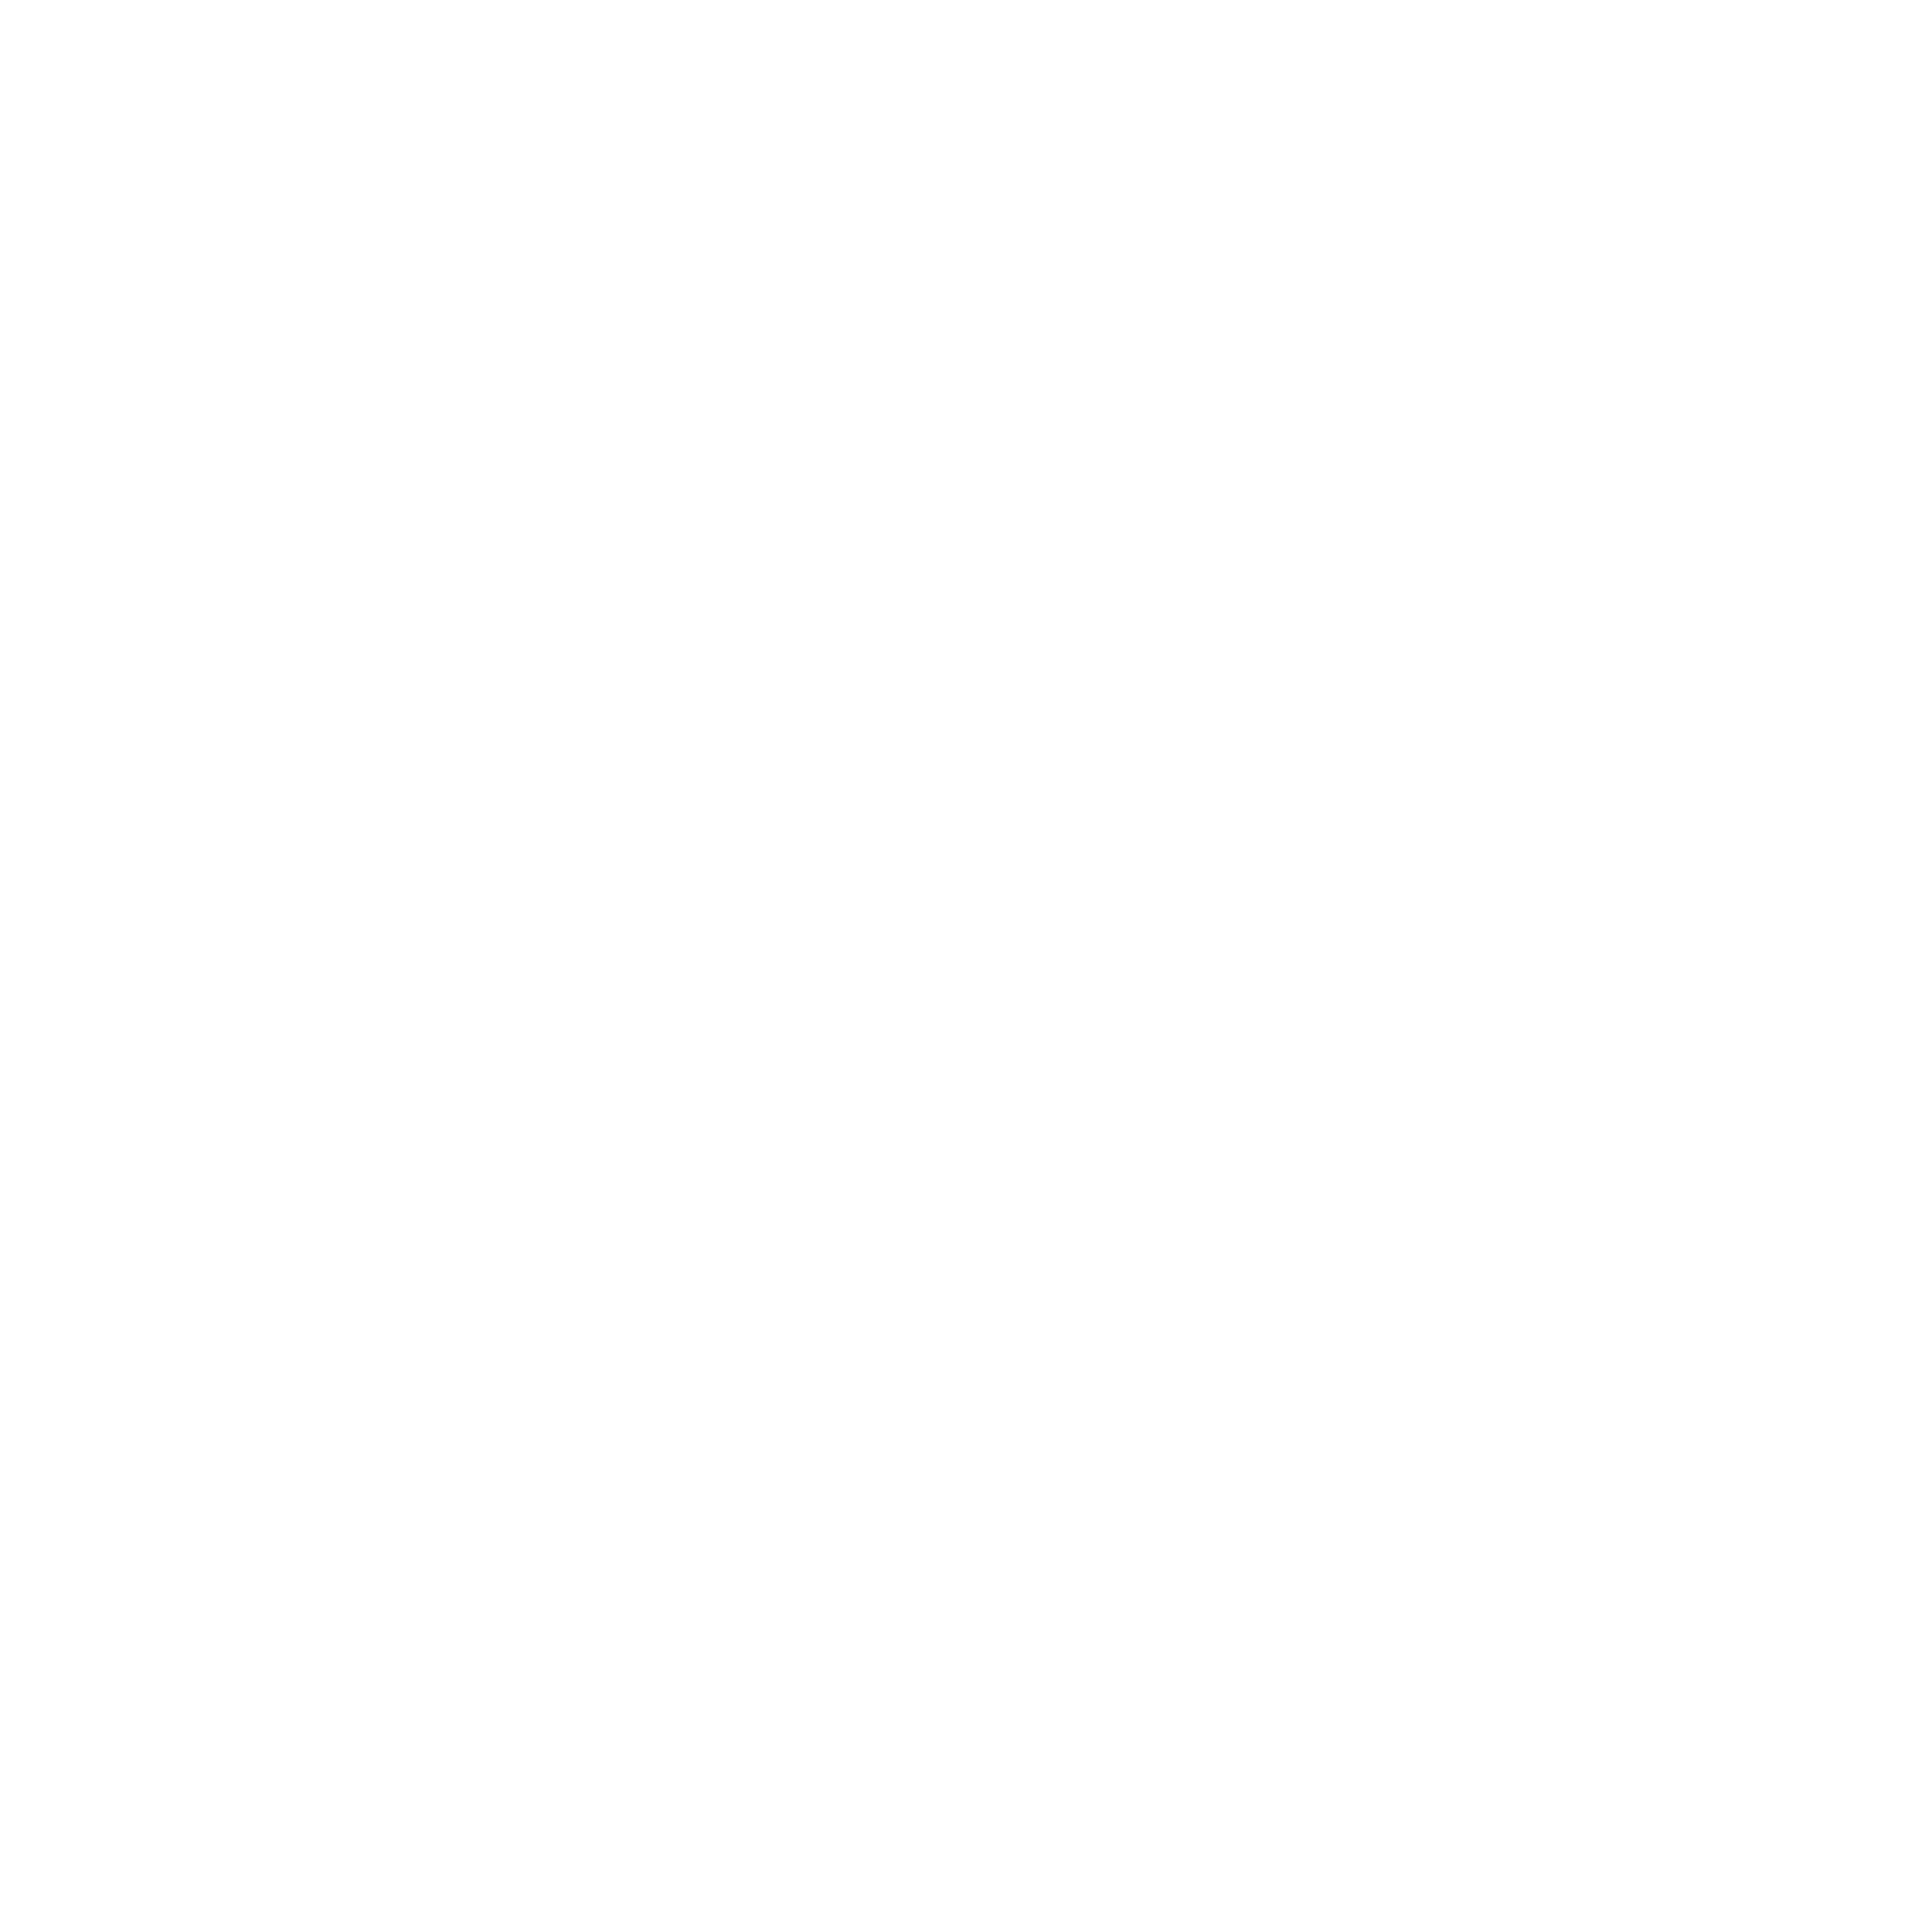 Hollermeier Organic logo White